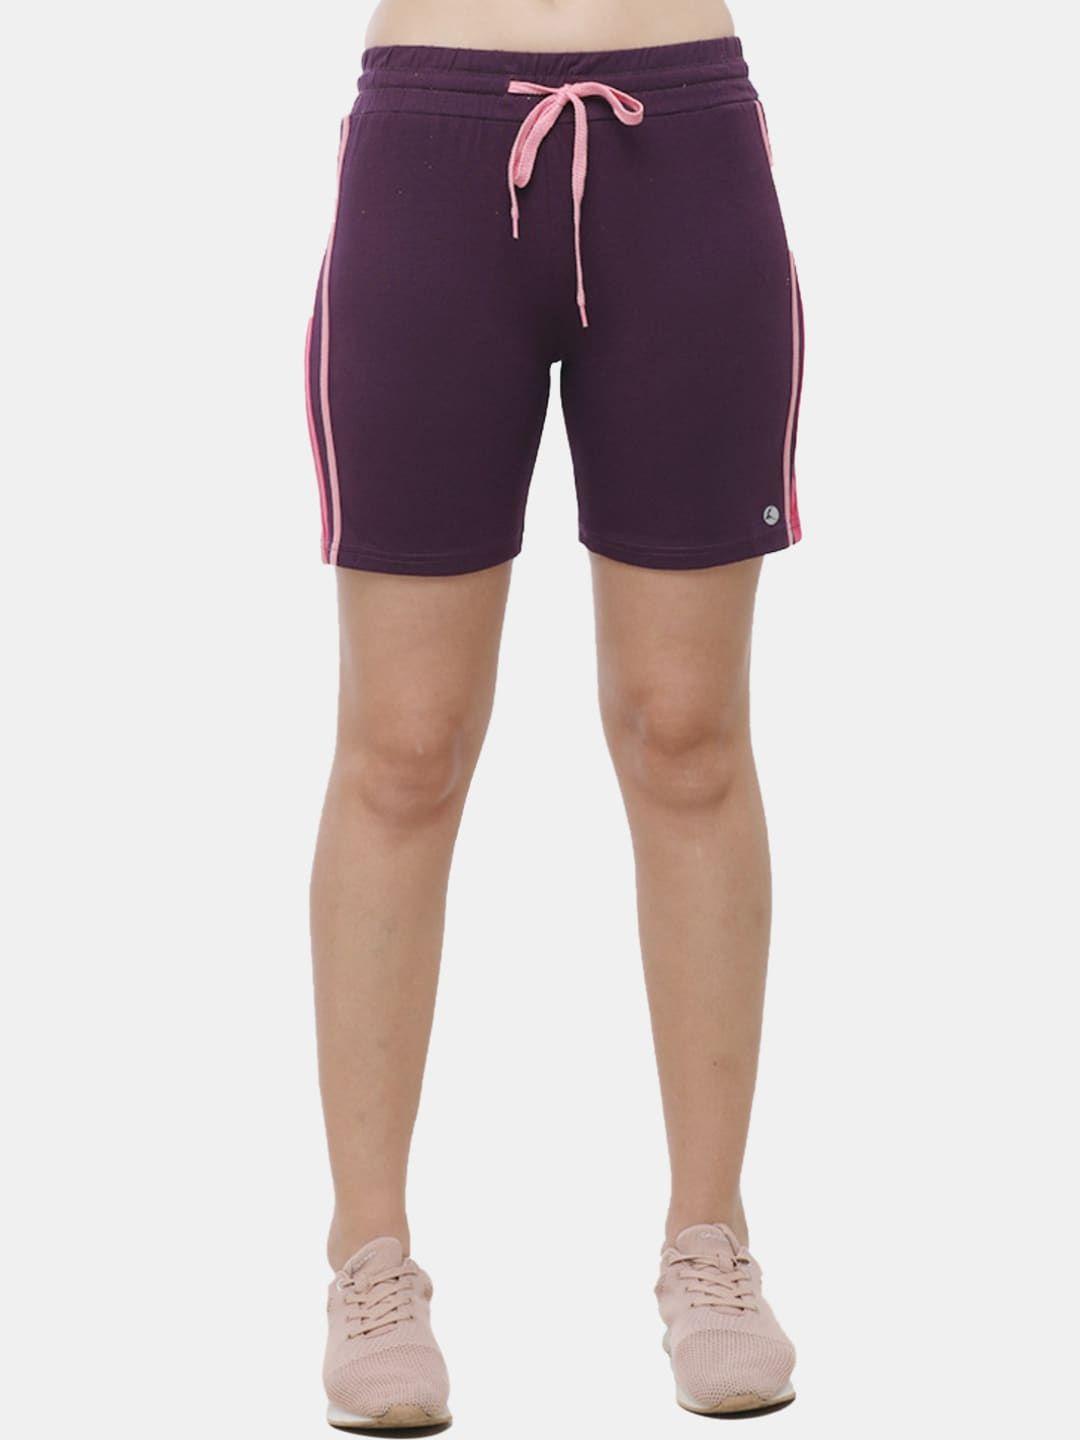 lovable sport women purple cycling shorts